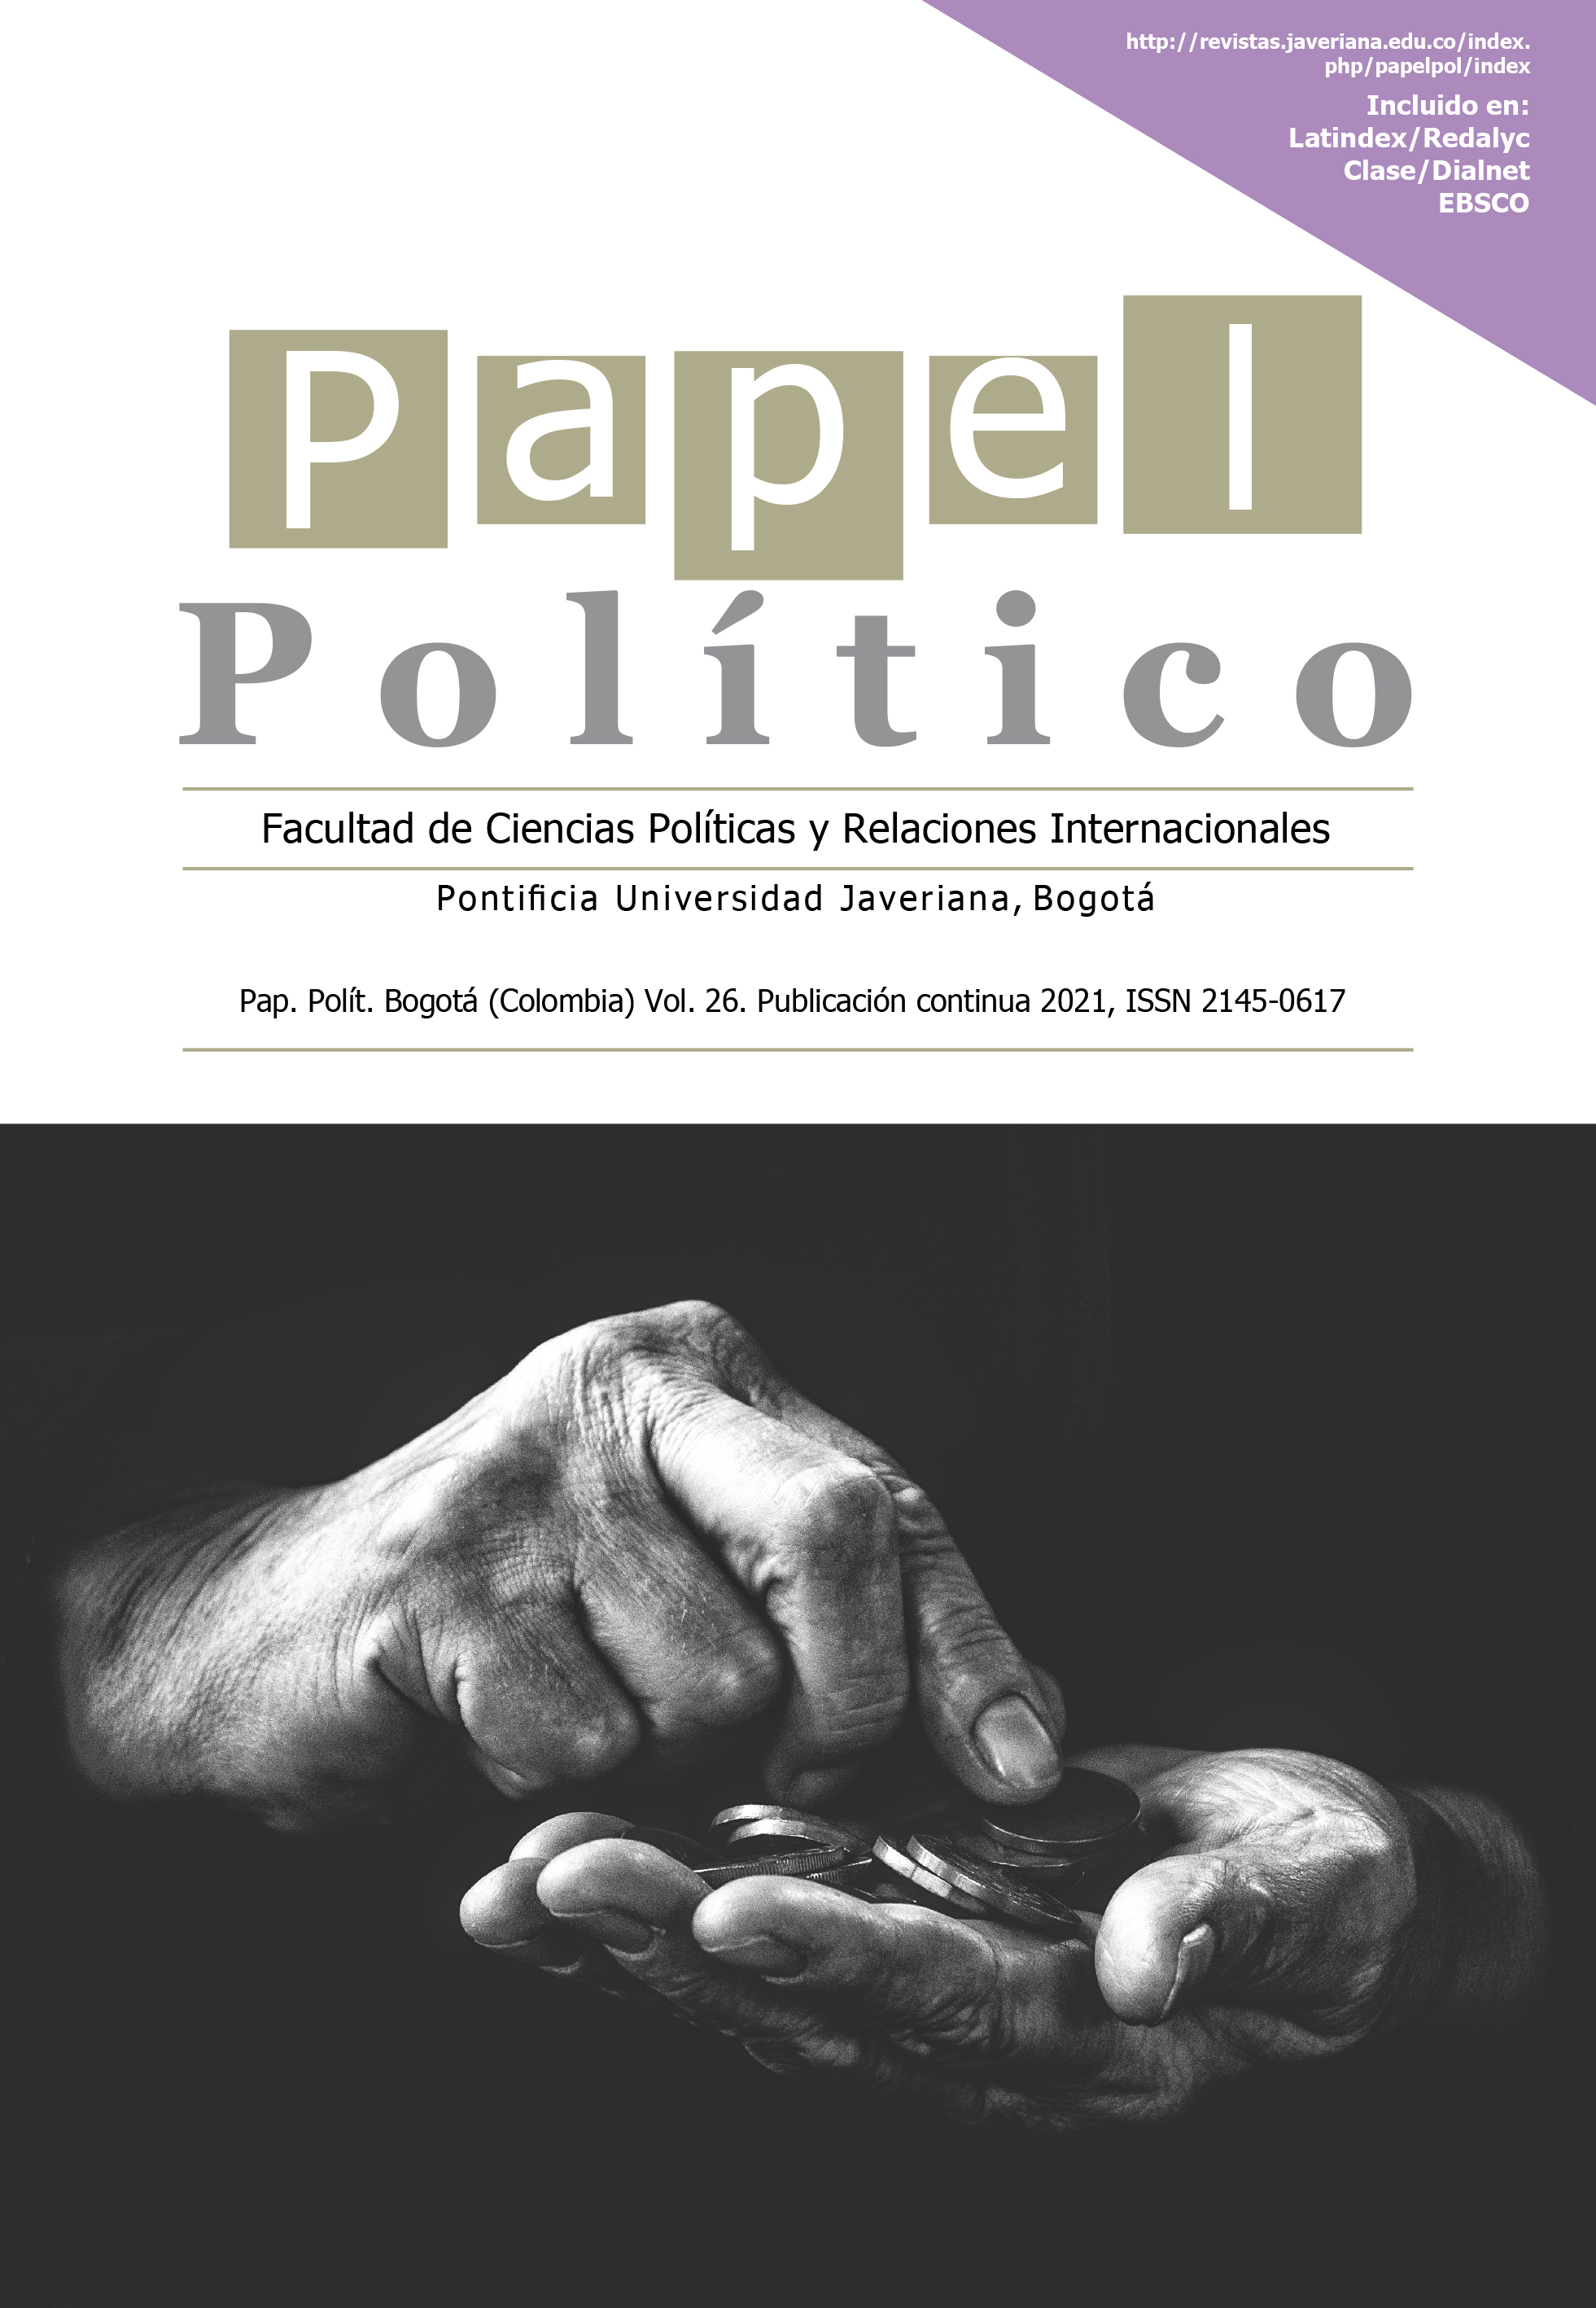 Teoría y práctica del neoliberalismo. Debates y controversias teóricas,  ontológicas y axiológicas | Papel Político